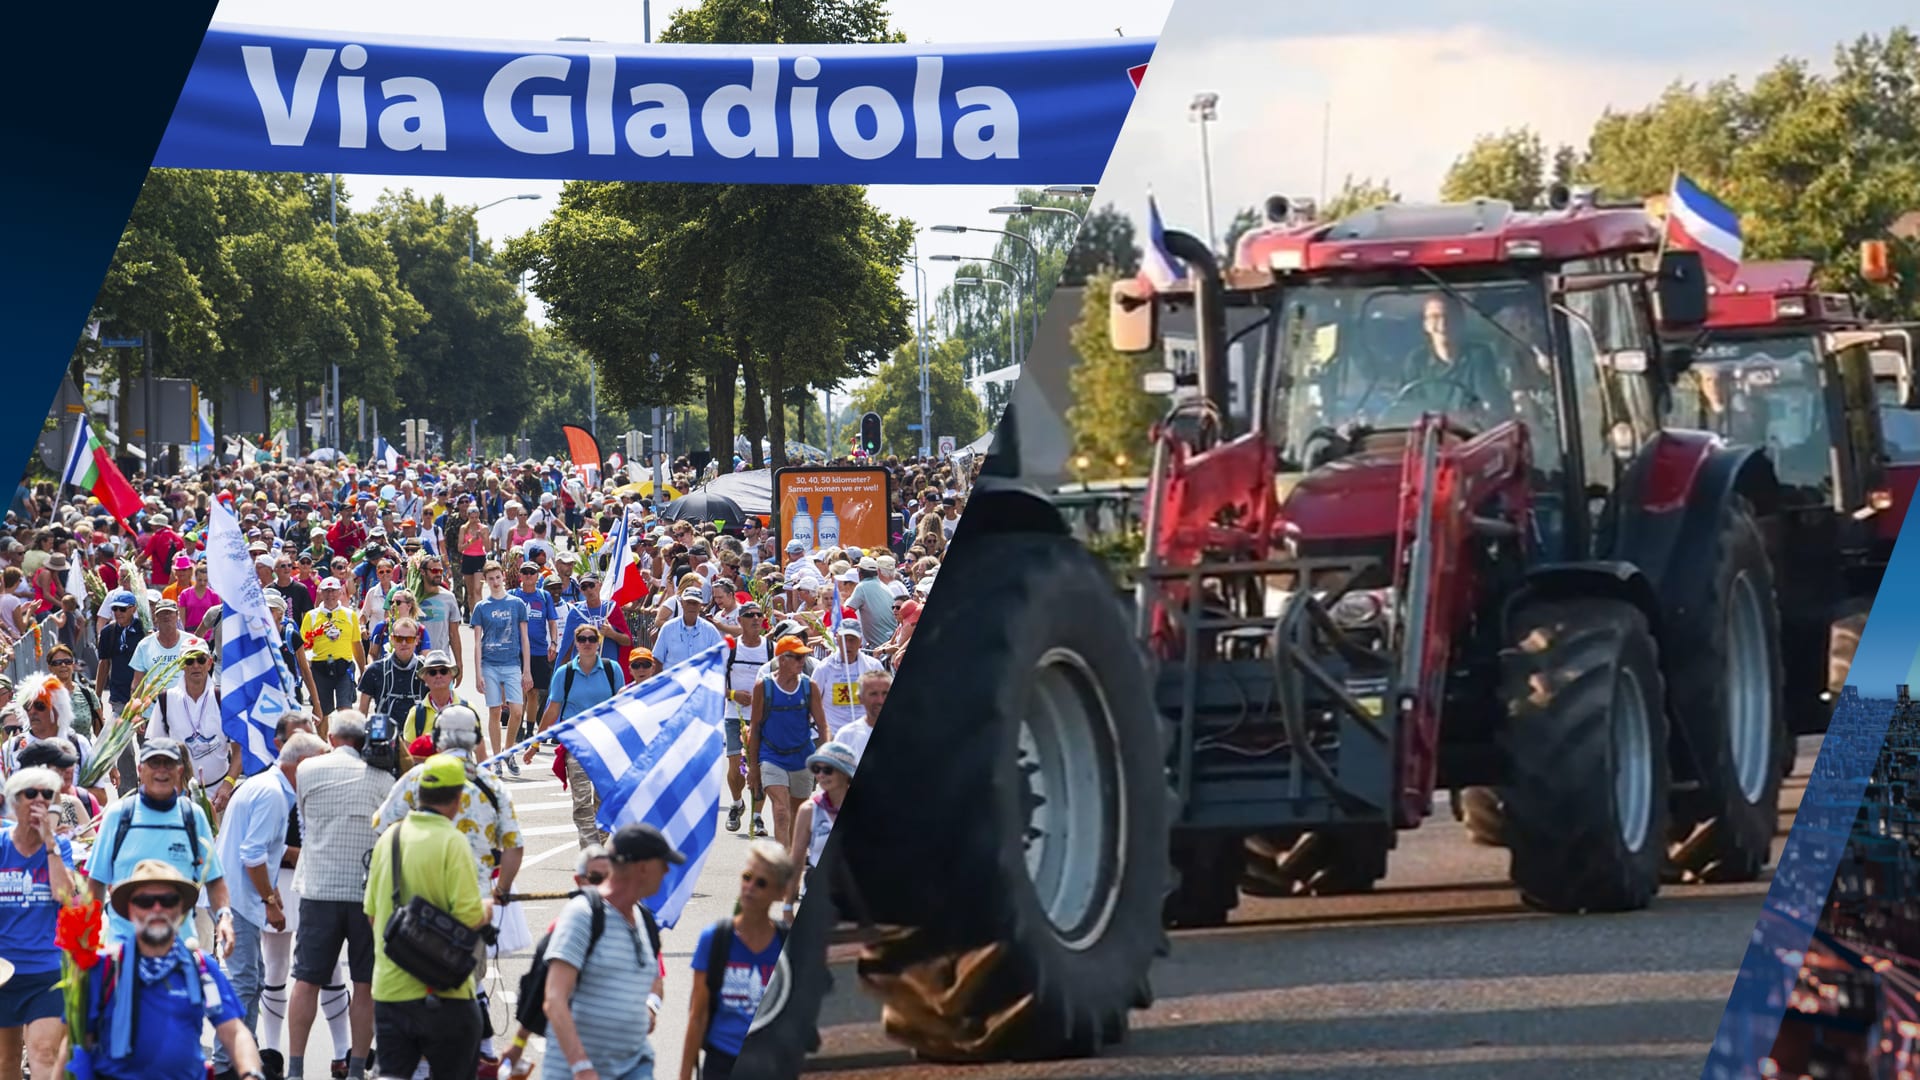 Farmers Defence Force wil met trekkers naar Via Gladiola tijdens 4Daagse